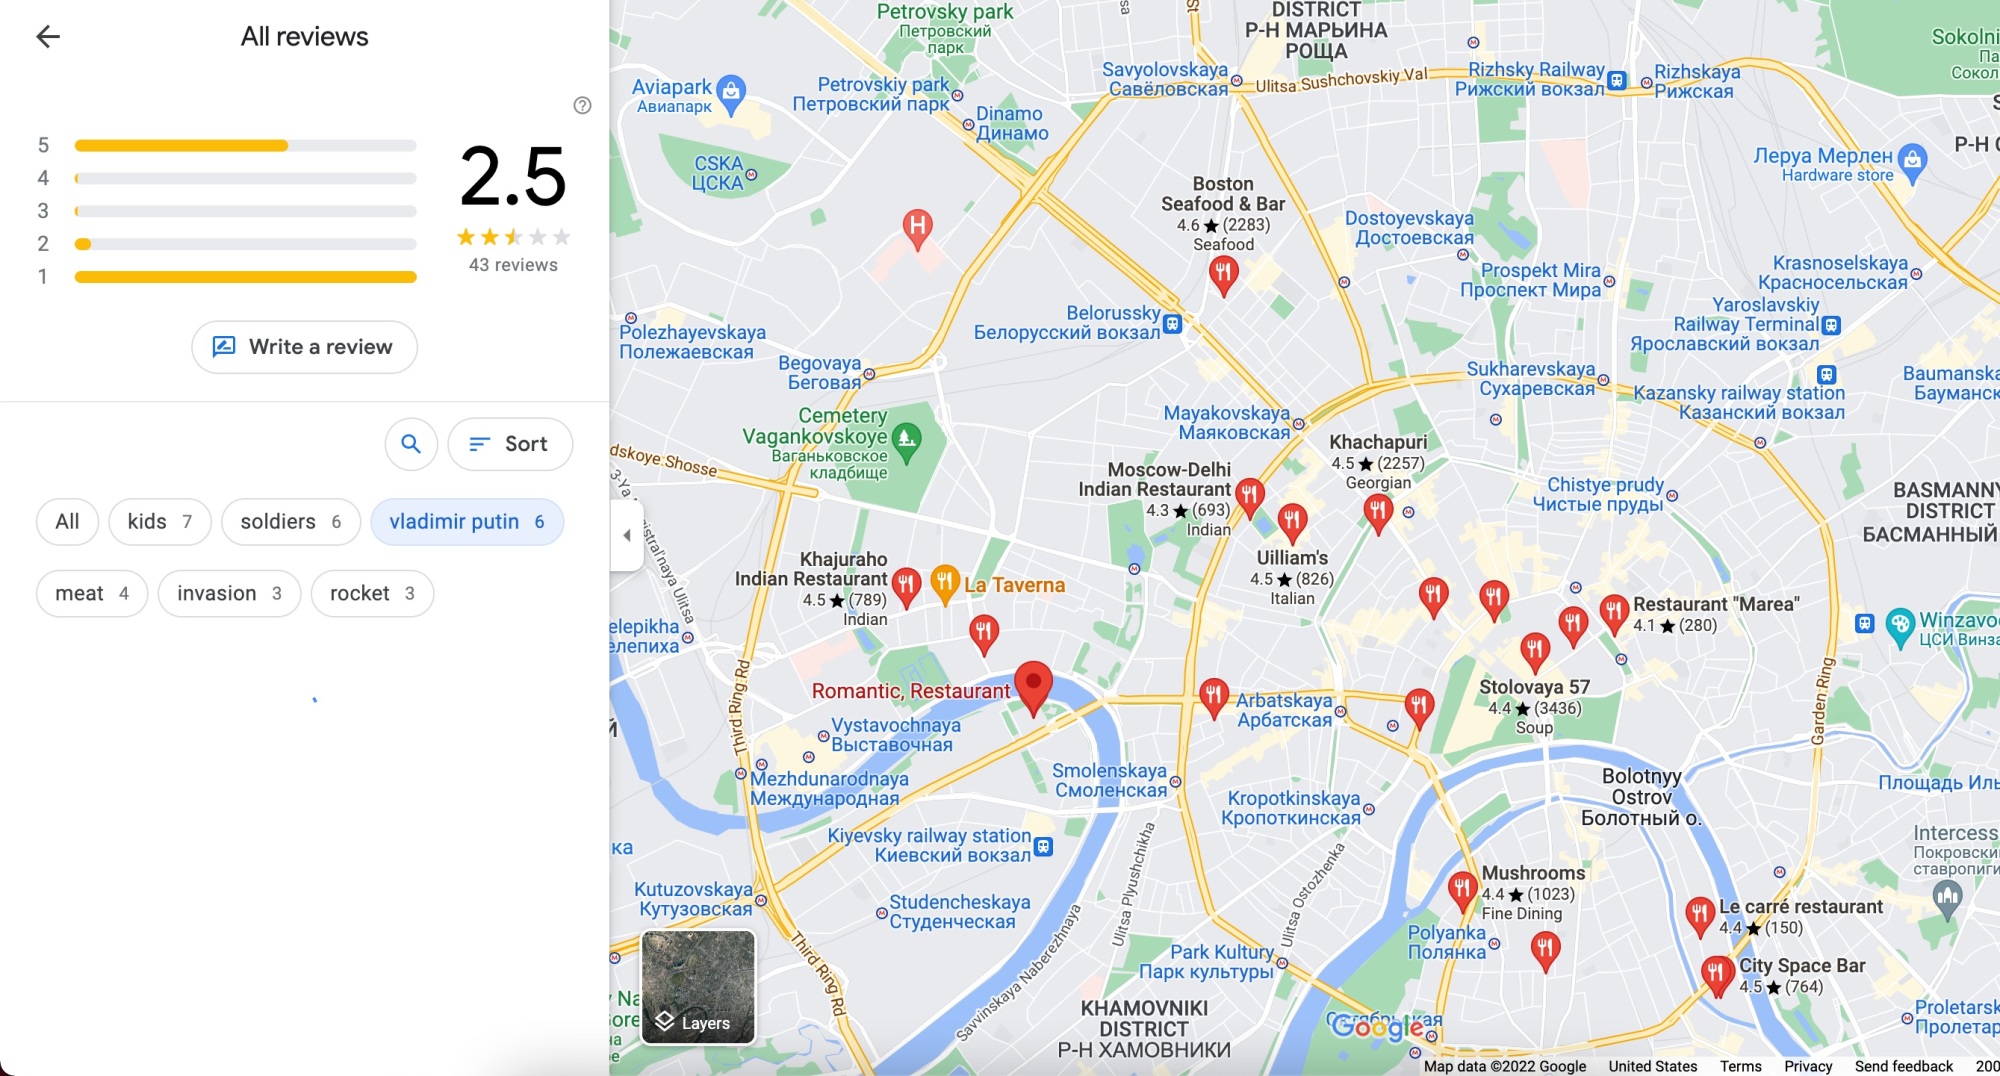 capture d'écran de google maps à Moscou sans messages sur l'invasion